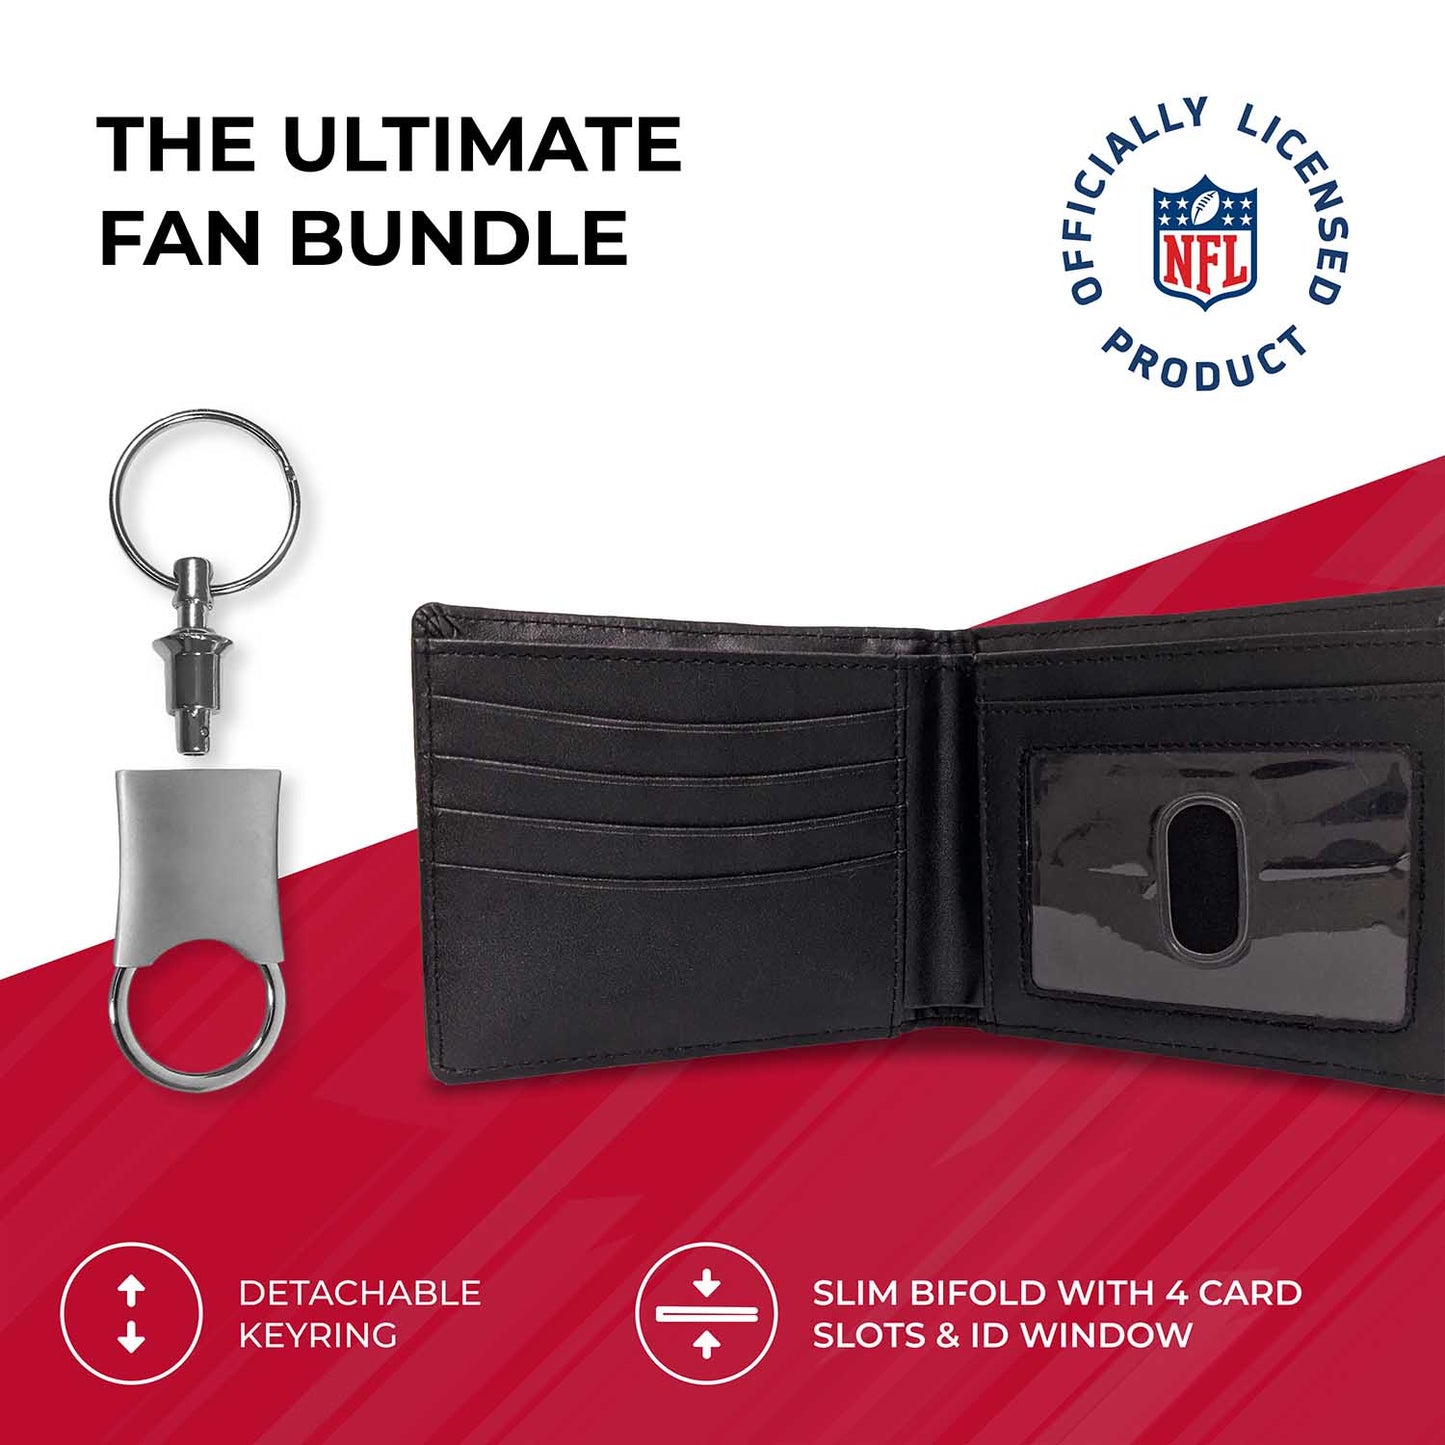 San Francisco 49ers NFL Team Logo Mens Bi Fold Wallet and Unisex Valet Keychain Bundle - Black